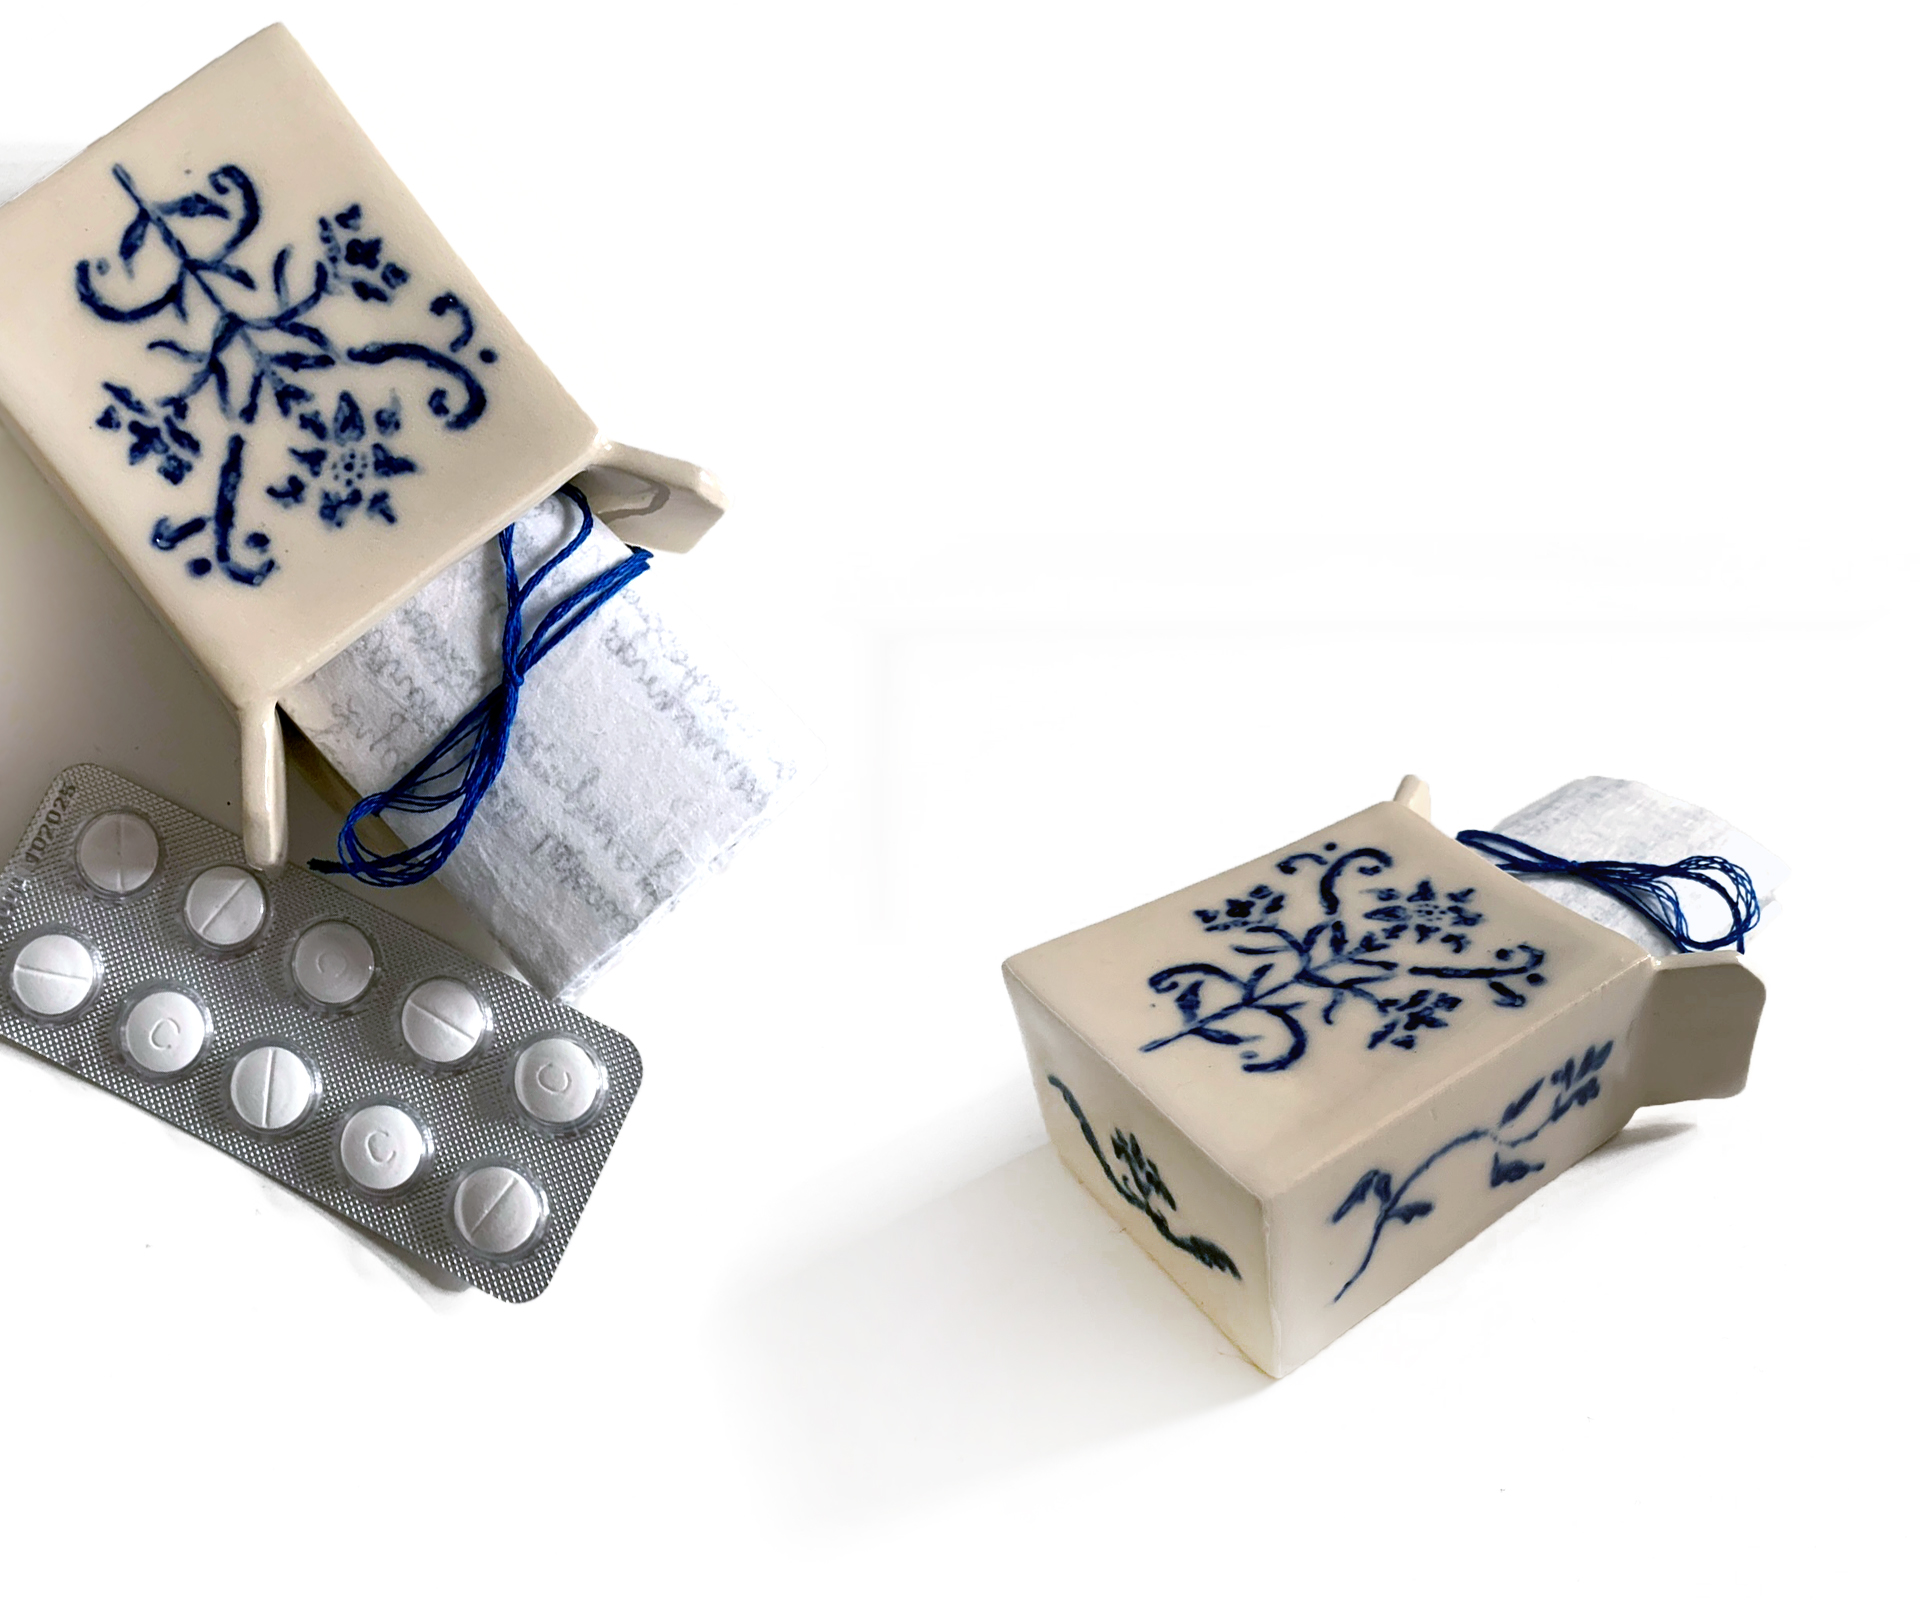 Układ z kompozycją blistra leków i pudełkami na leki wykonanymi 	z ceramiki z niebieskim wzorem. Z pudełek wystaje zwinięty 	zapisany papier przewiązany niebieską nicią.